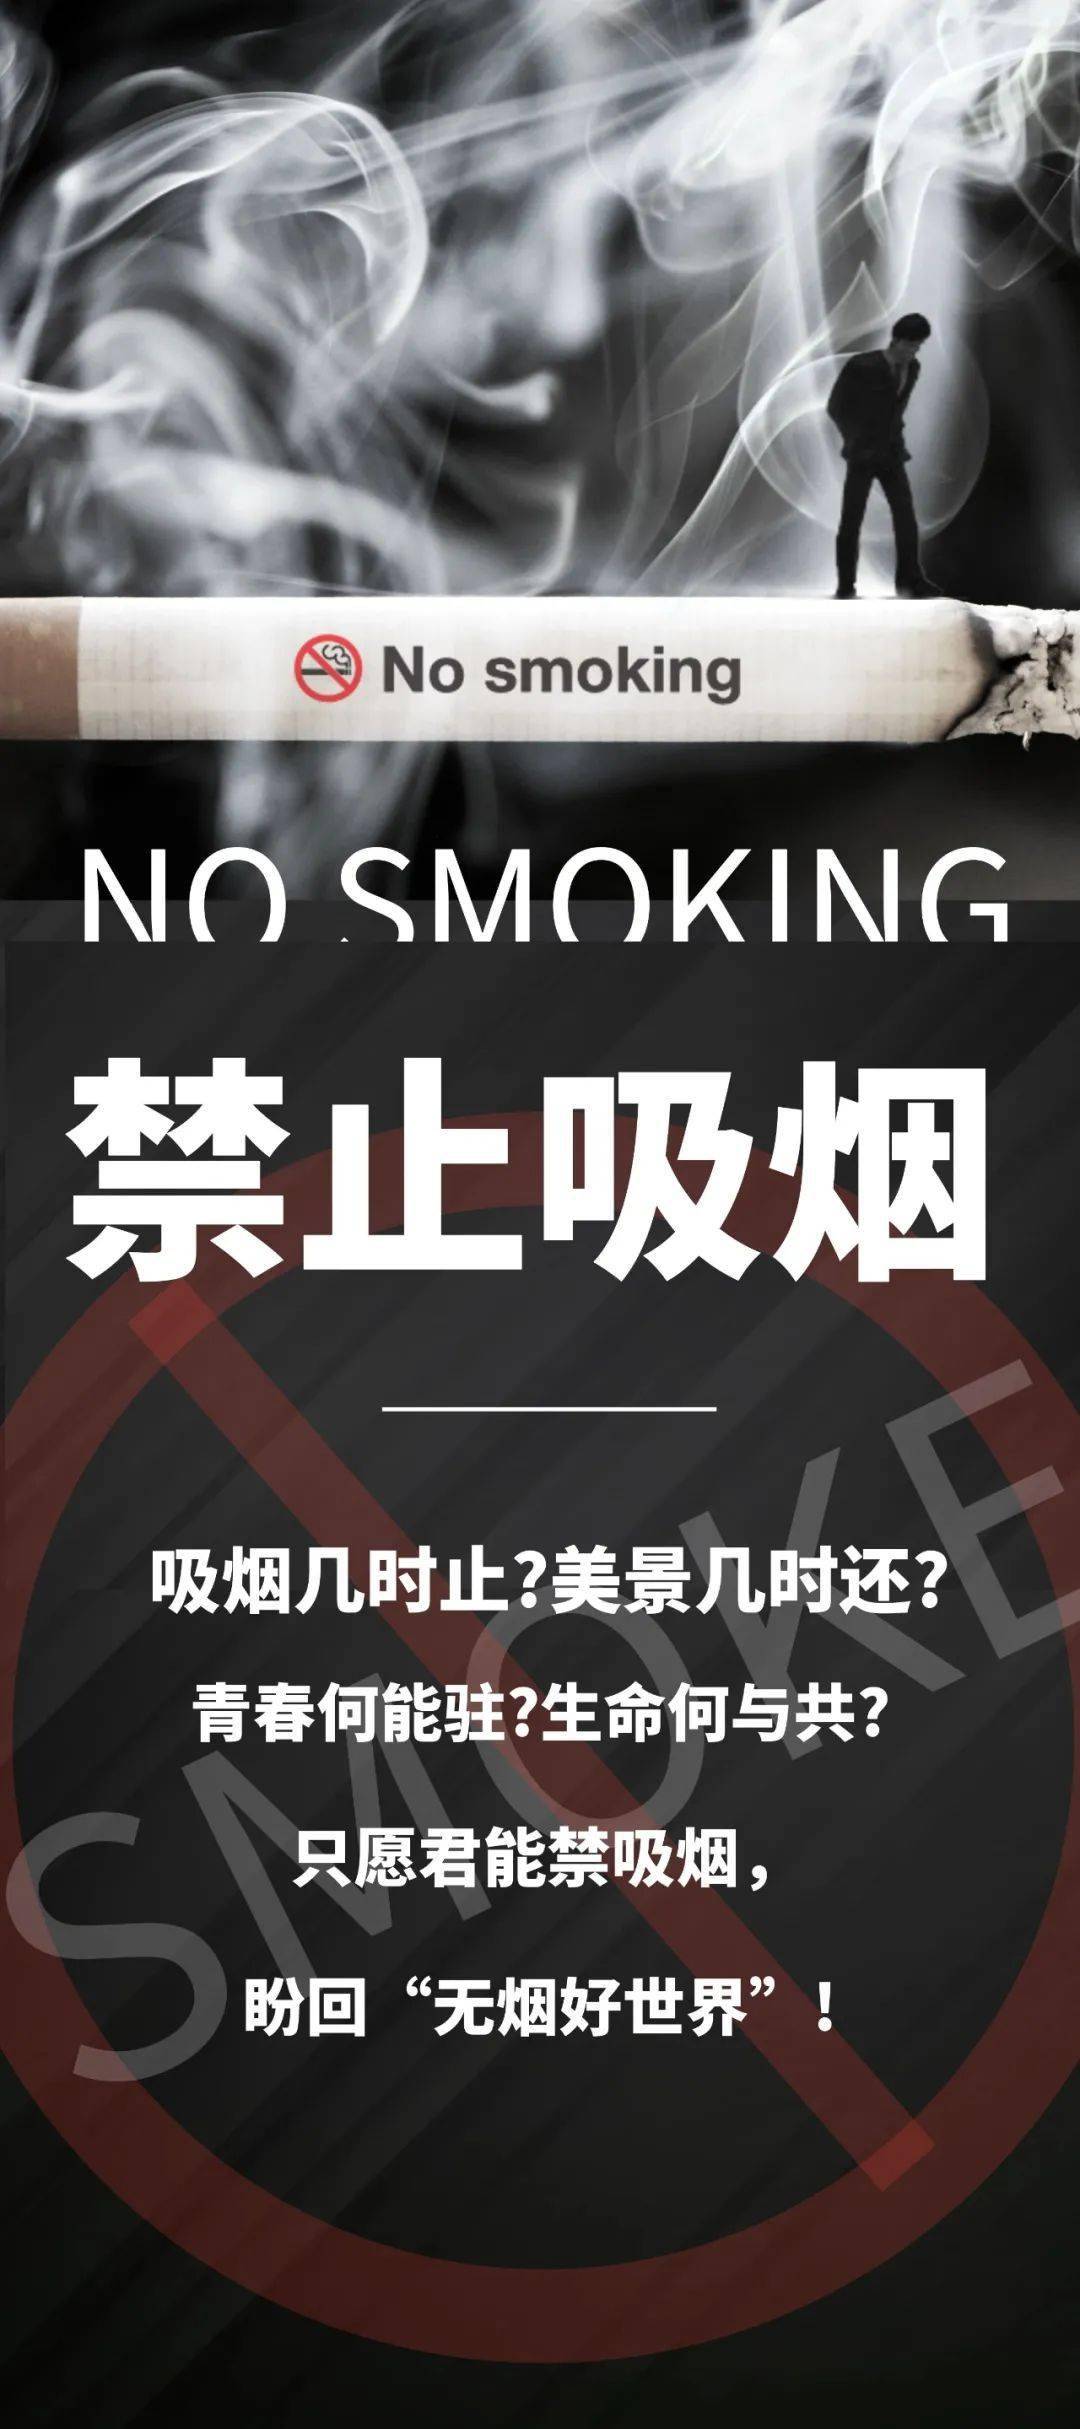 每一个烟盒上面都有"吸烟有害健康"的字样,但吸烟的真正危害都有